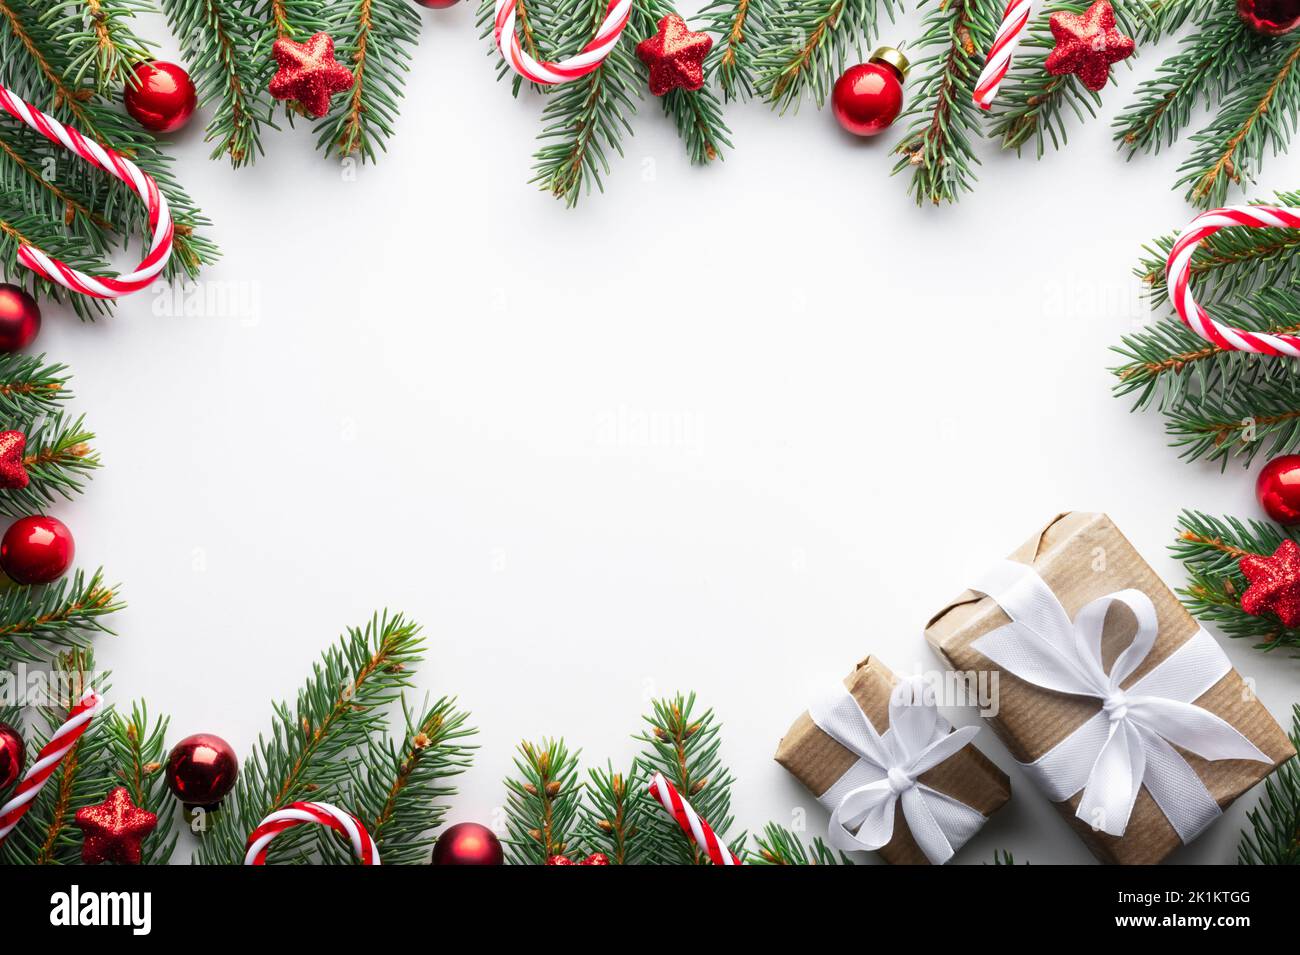 Fond de Noël créatif avec boules de Noël, brindilles de pin et décorations étoiles dorées sur fond blanc. Flat lay, vue de dessus, espace de copie Banque D'Images